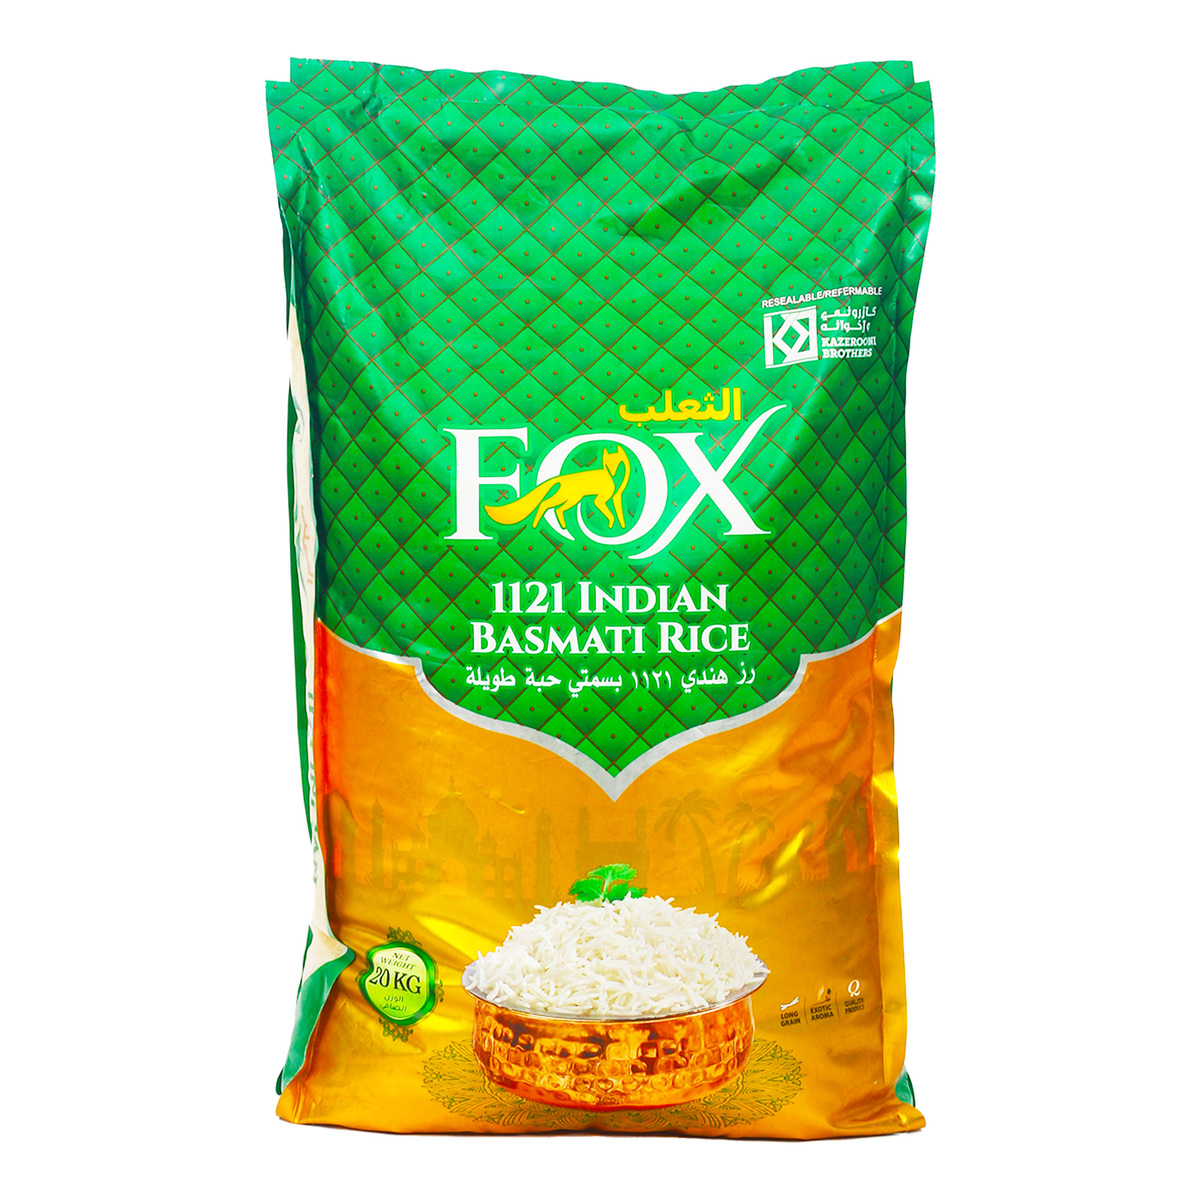 Fox Basmati Rice 20 kg